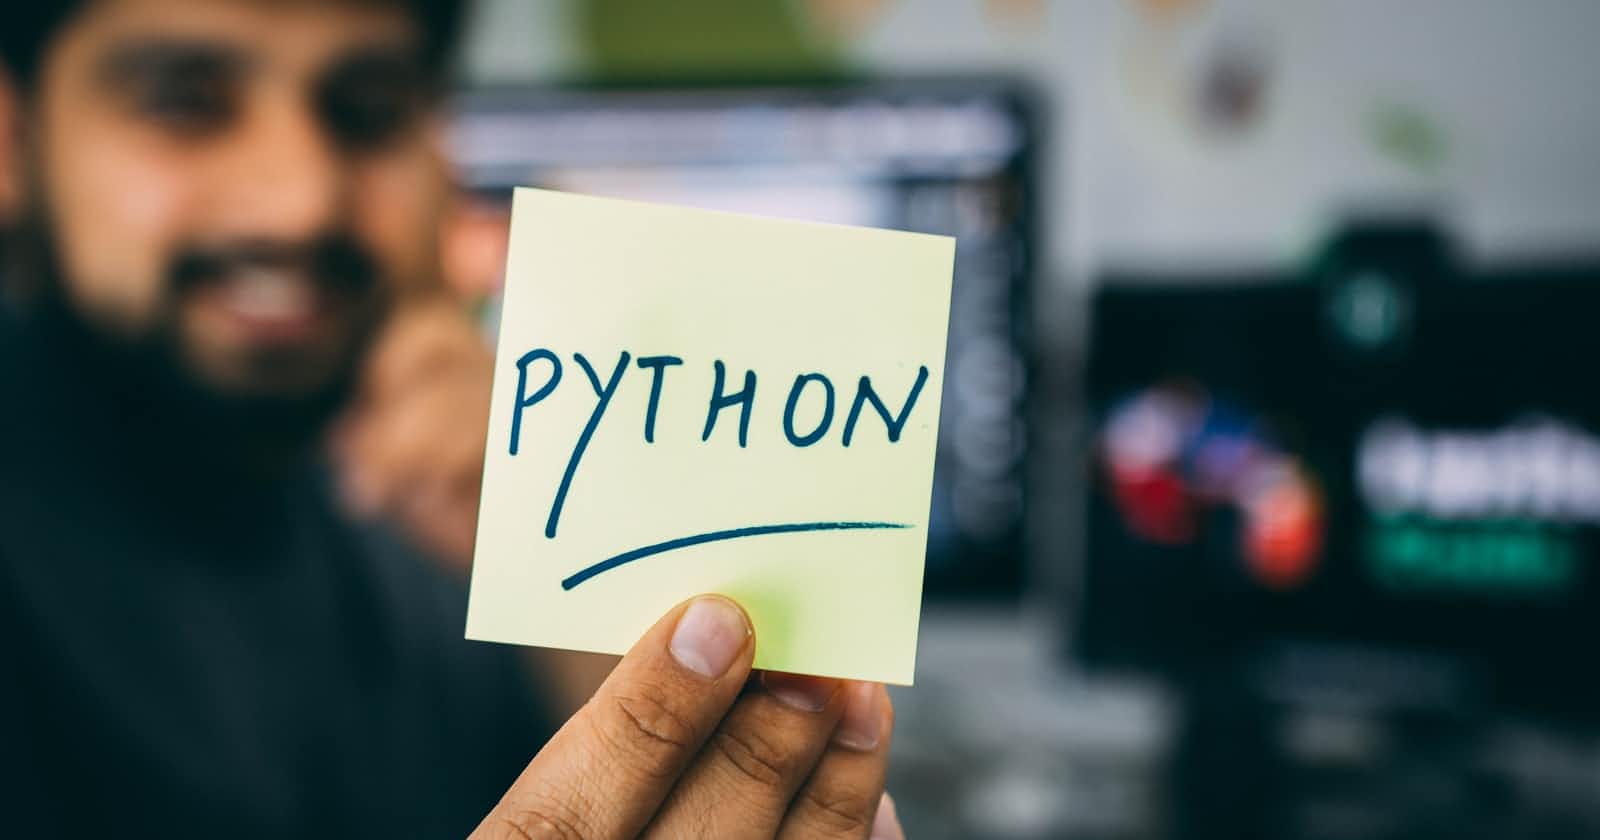 Let's Explore the Python...